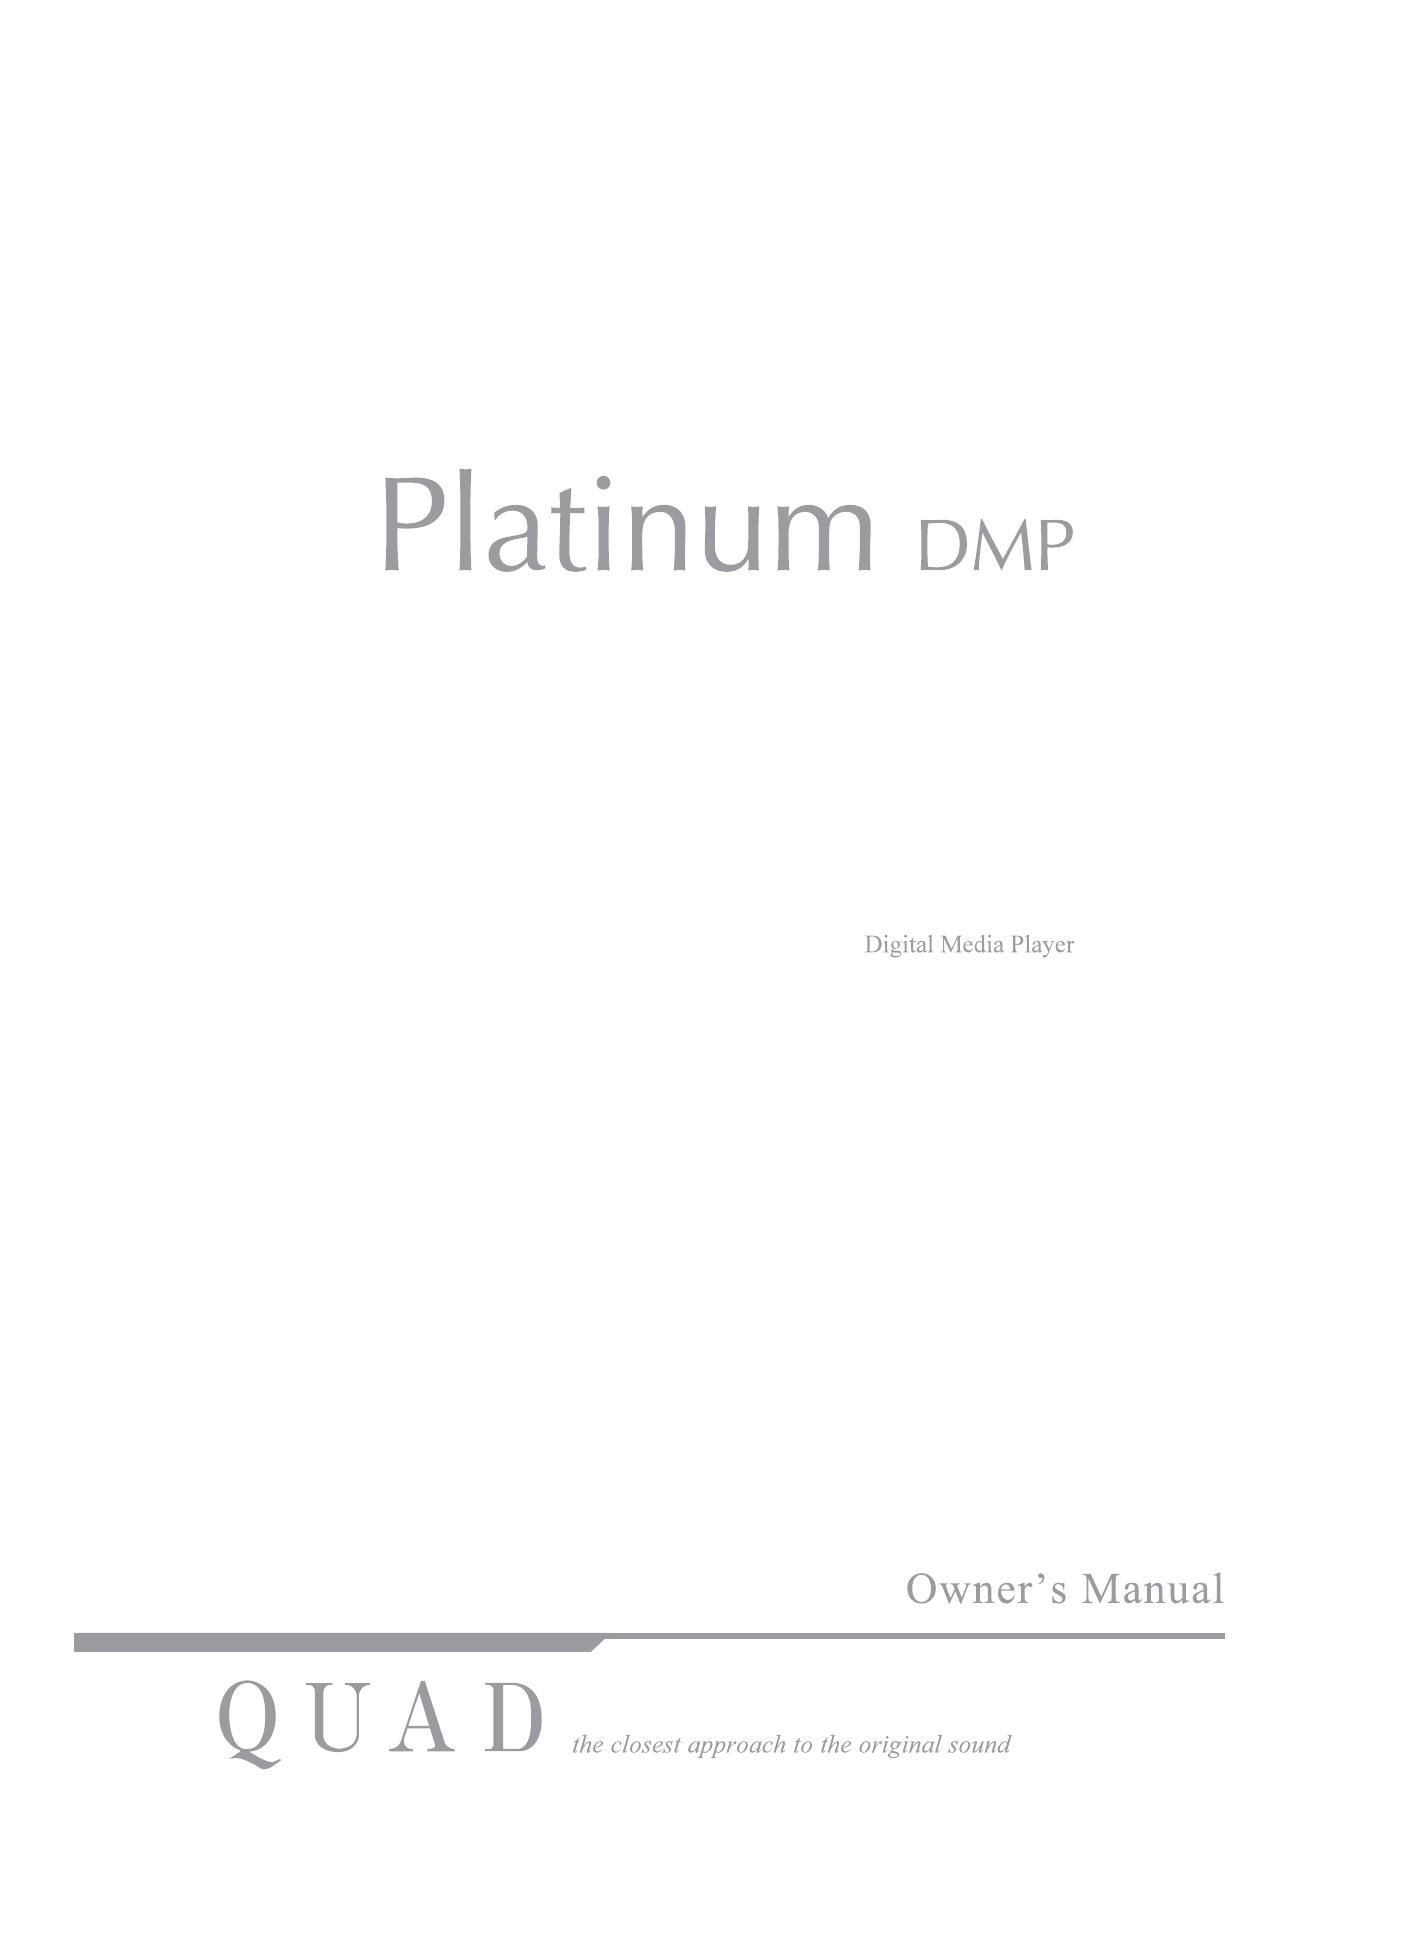 Quad Platinum DMP Owners Manual